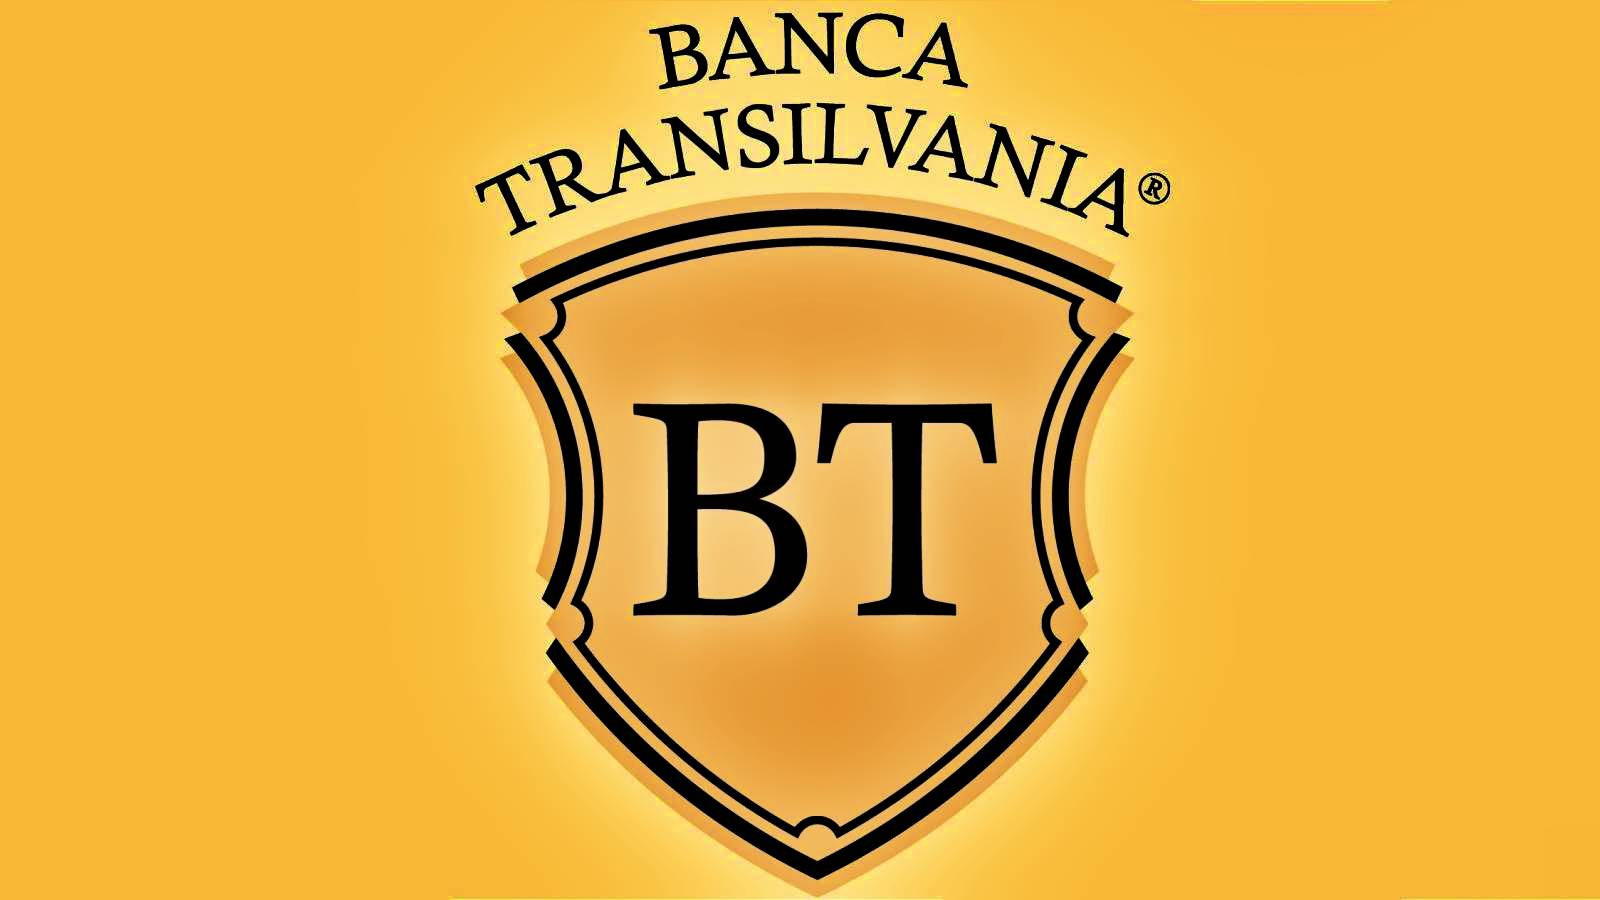 OFICJALNE zawiadomienie BANCA Transilvania wydane dla wszystkich klientów w Rumunii